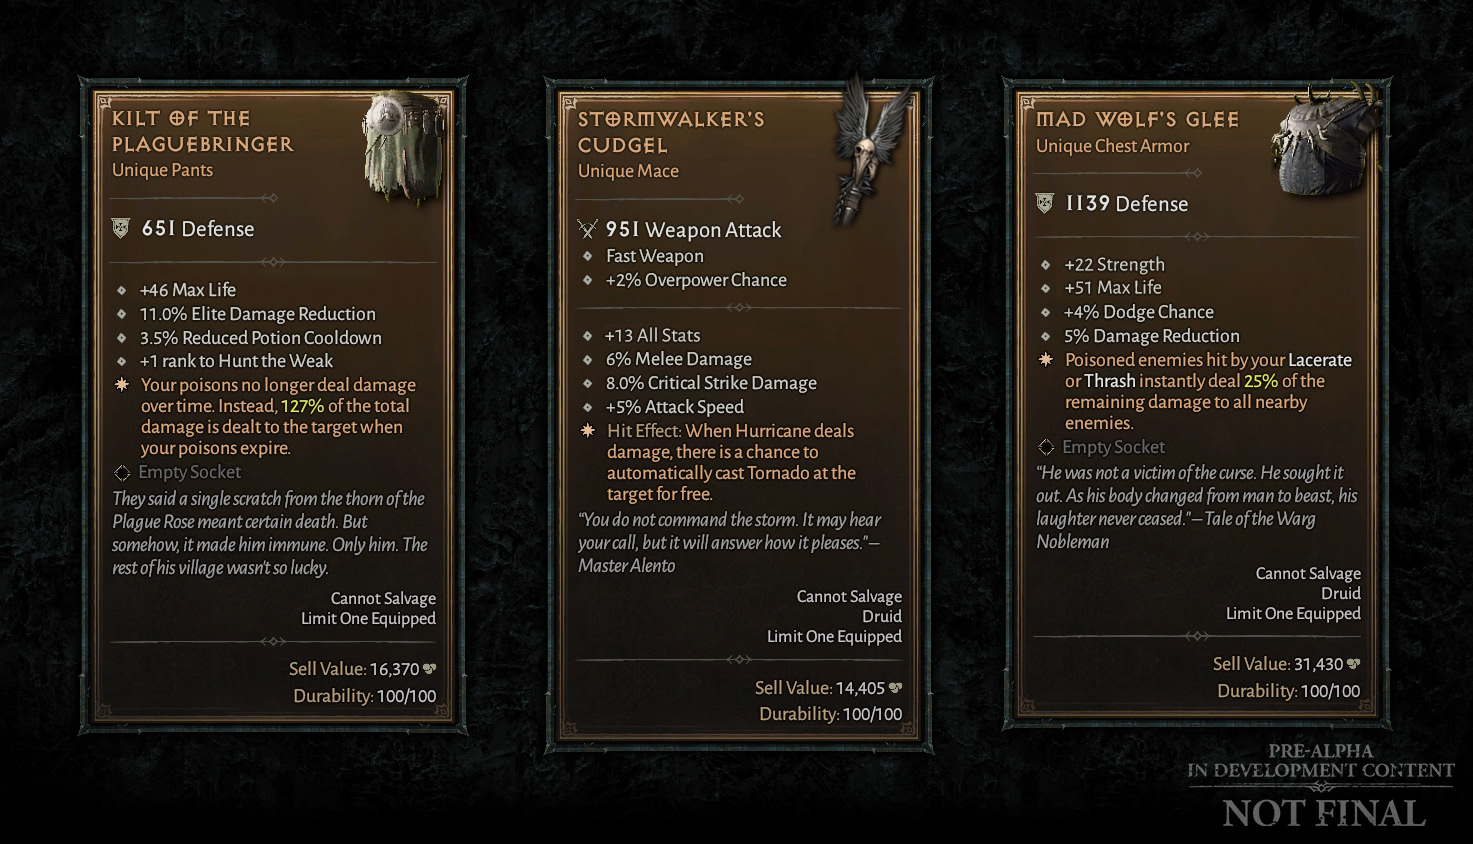 Affixe aller einzigartigen Gegenstände aus Diablo 4 wurden enthüllt